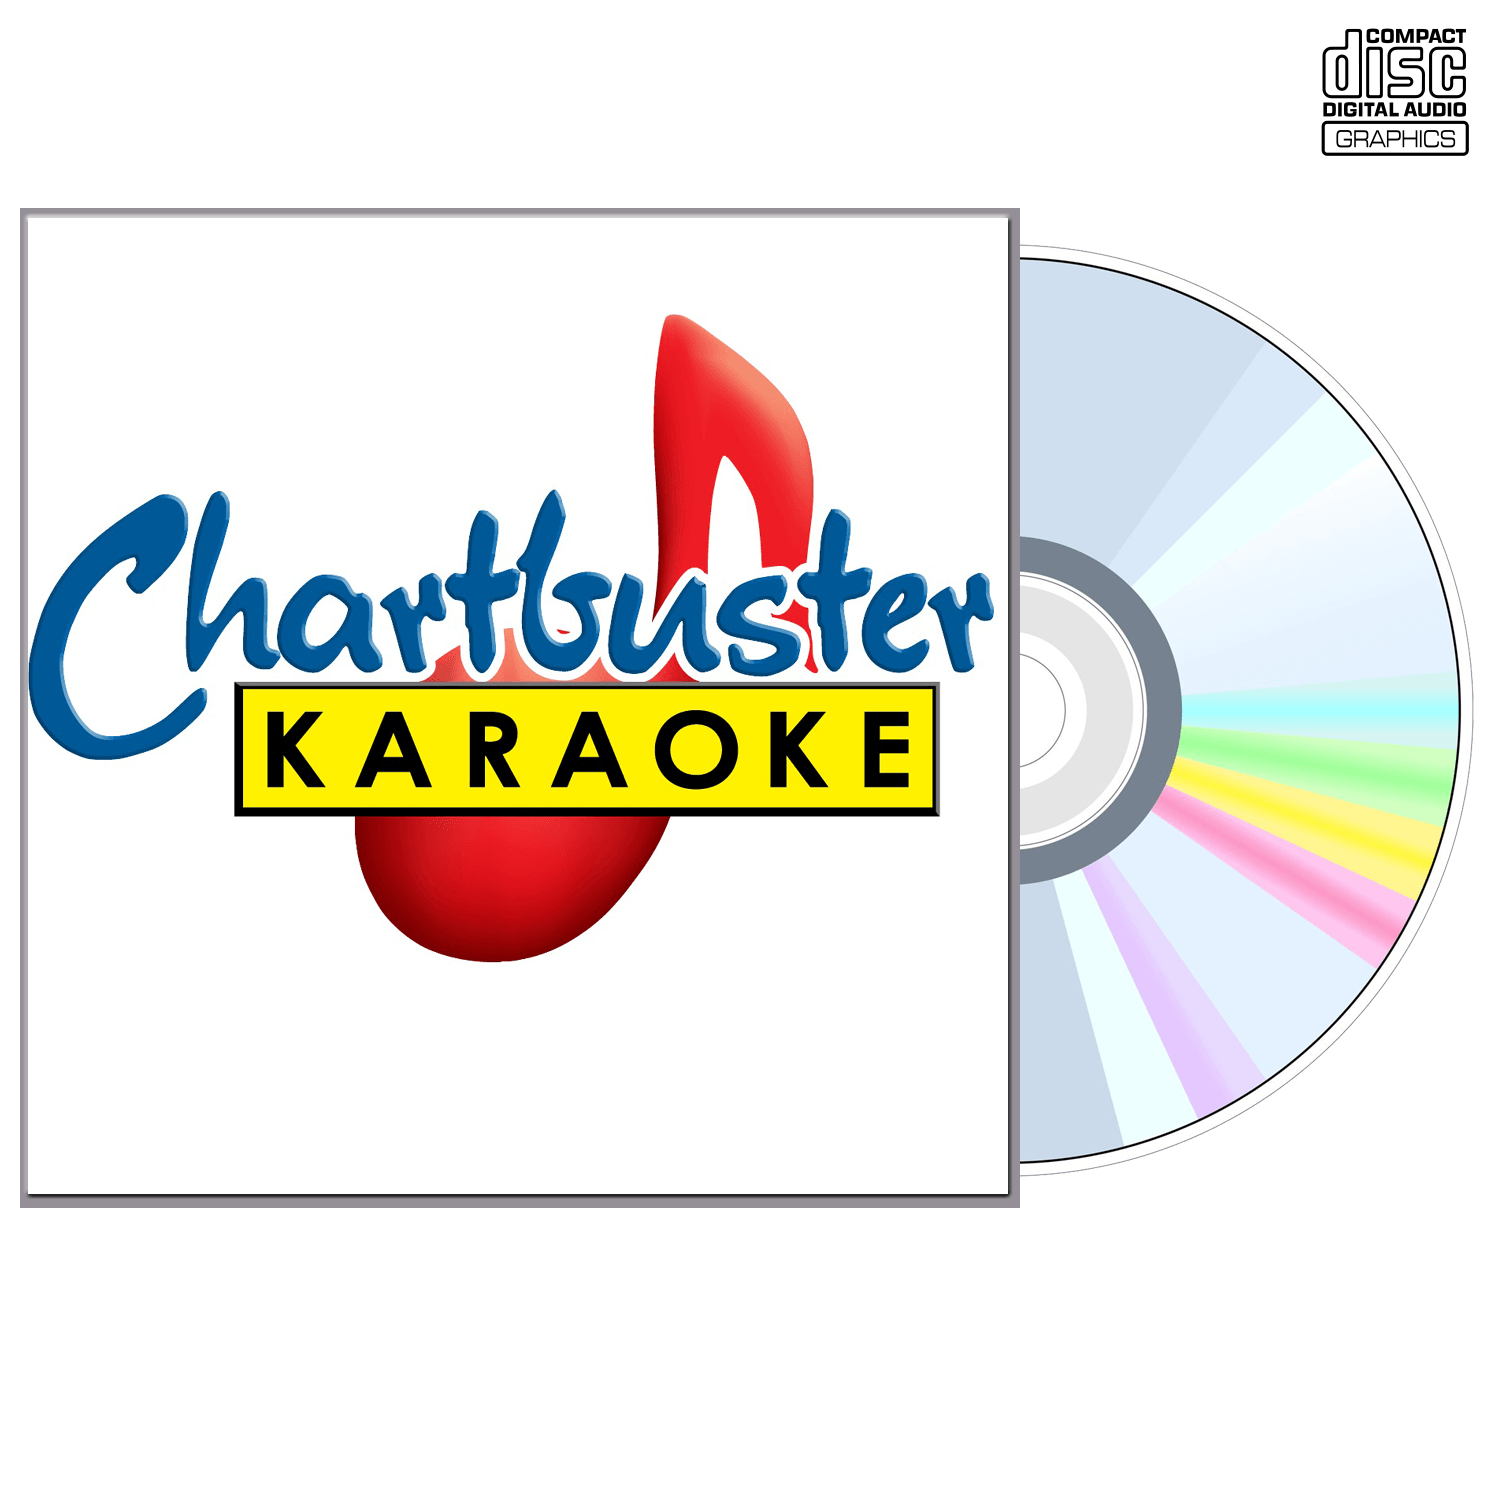 Bobby Vinton - CD+G - Chartbuster Karaoke - Karaoke Home Entertainment